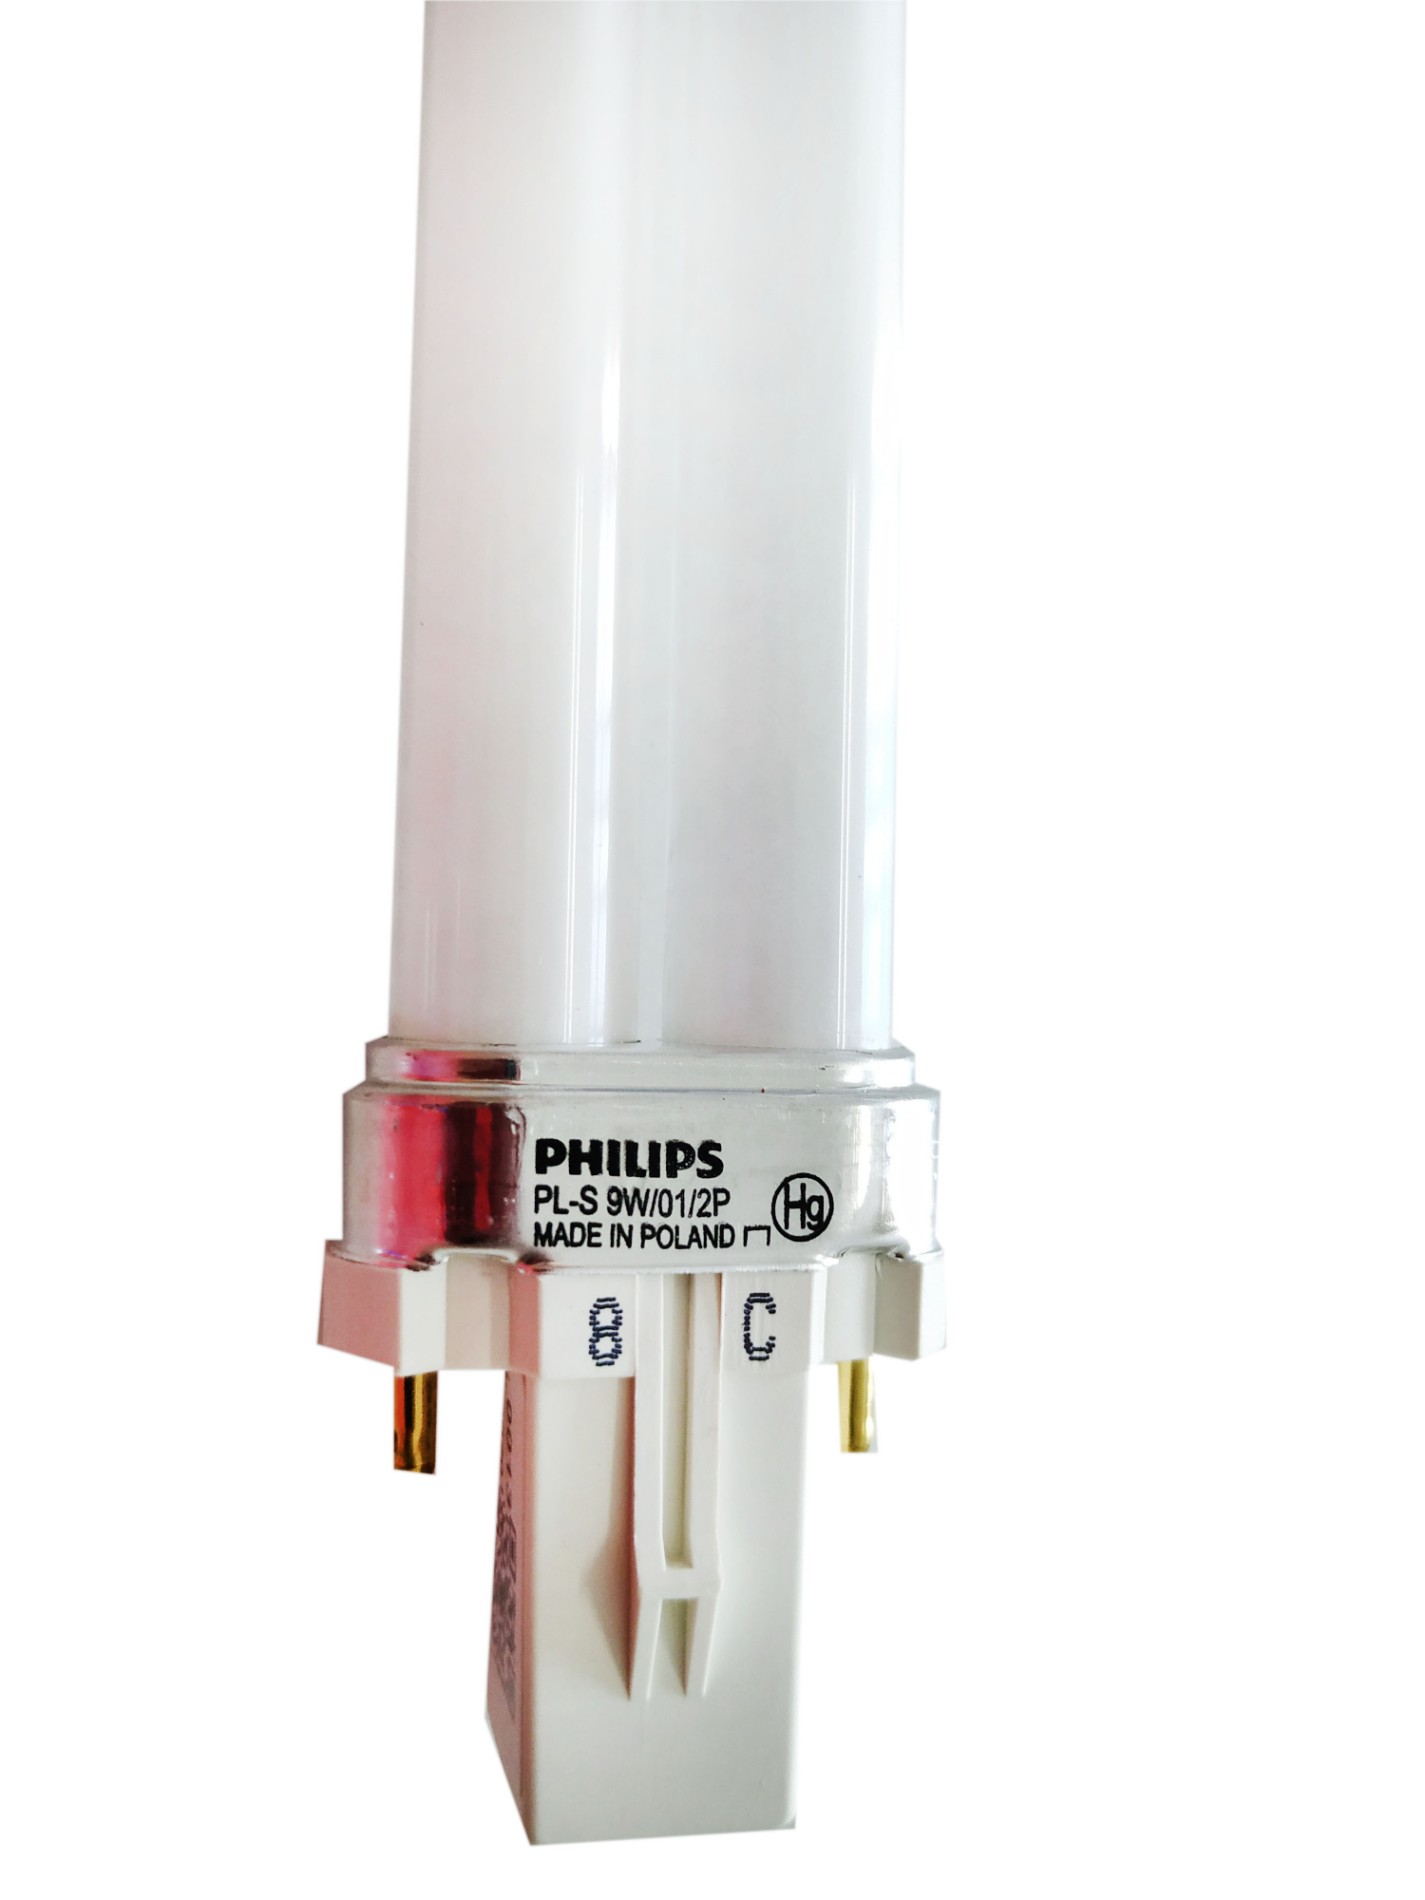 شراء مصباح UVB ذو النطاق الضيق PL-S من Philips ,مصباح UVB ذو النطاق الضيق PL-S من Philips الأسعار ·مصباح UVB ذو النطاق الضيق PL-S من Philips العلامات التجارية ,مصباح UVB ذو النطاق الضيق PL-S من Philips الصانع ,مصباح UVB ذو النطاق الضيق PL-S من Philips اقتباس ·مصباح UVB ذو النطاق الضيق PL-S من Philips الشركة